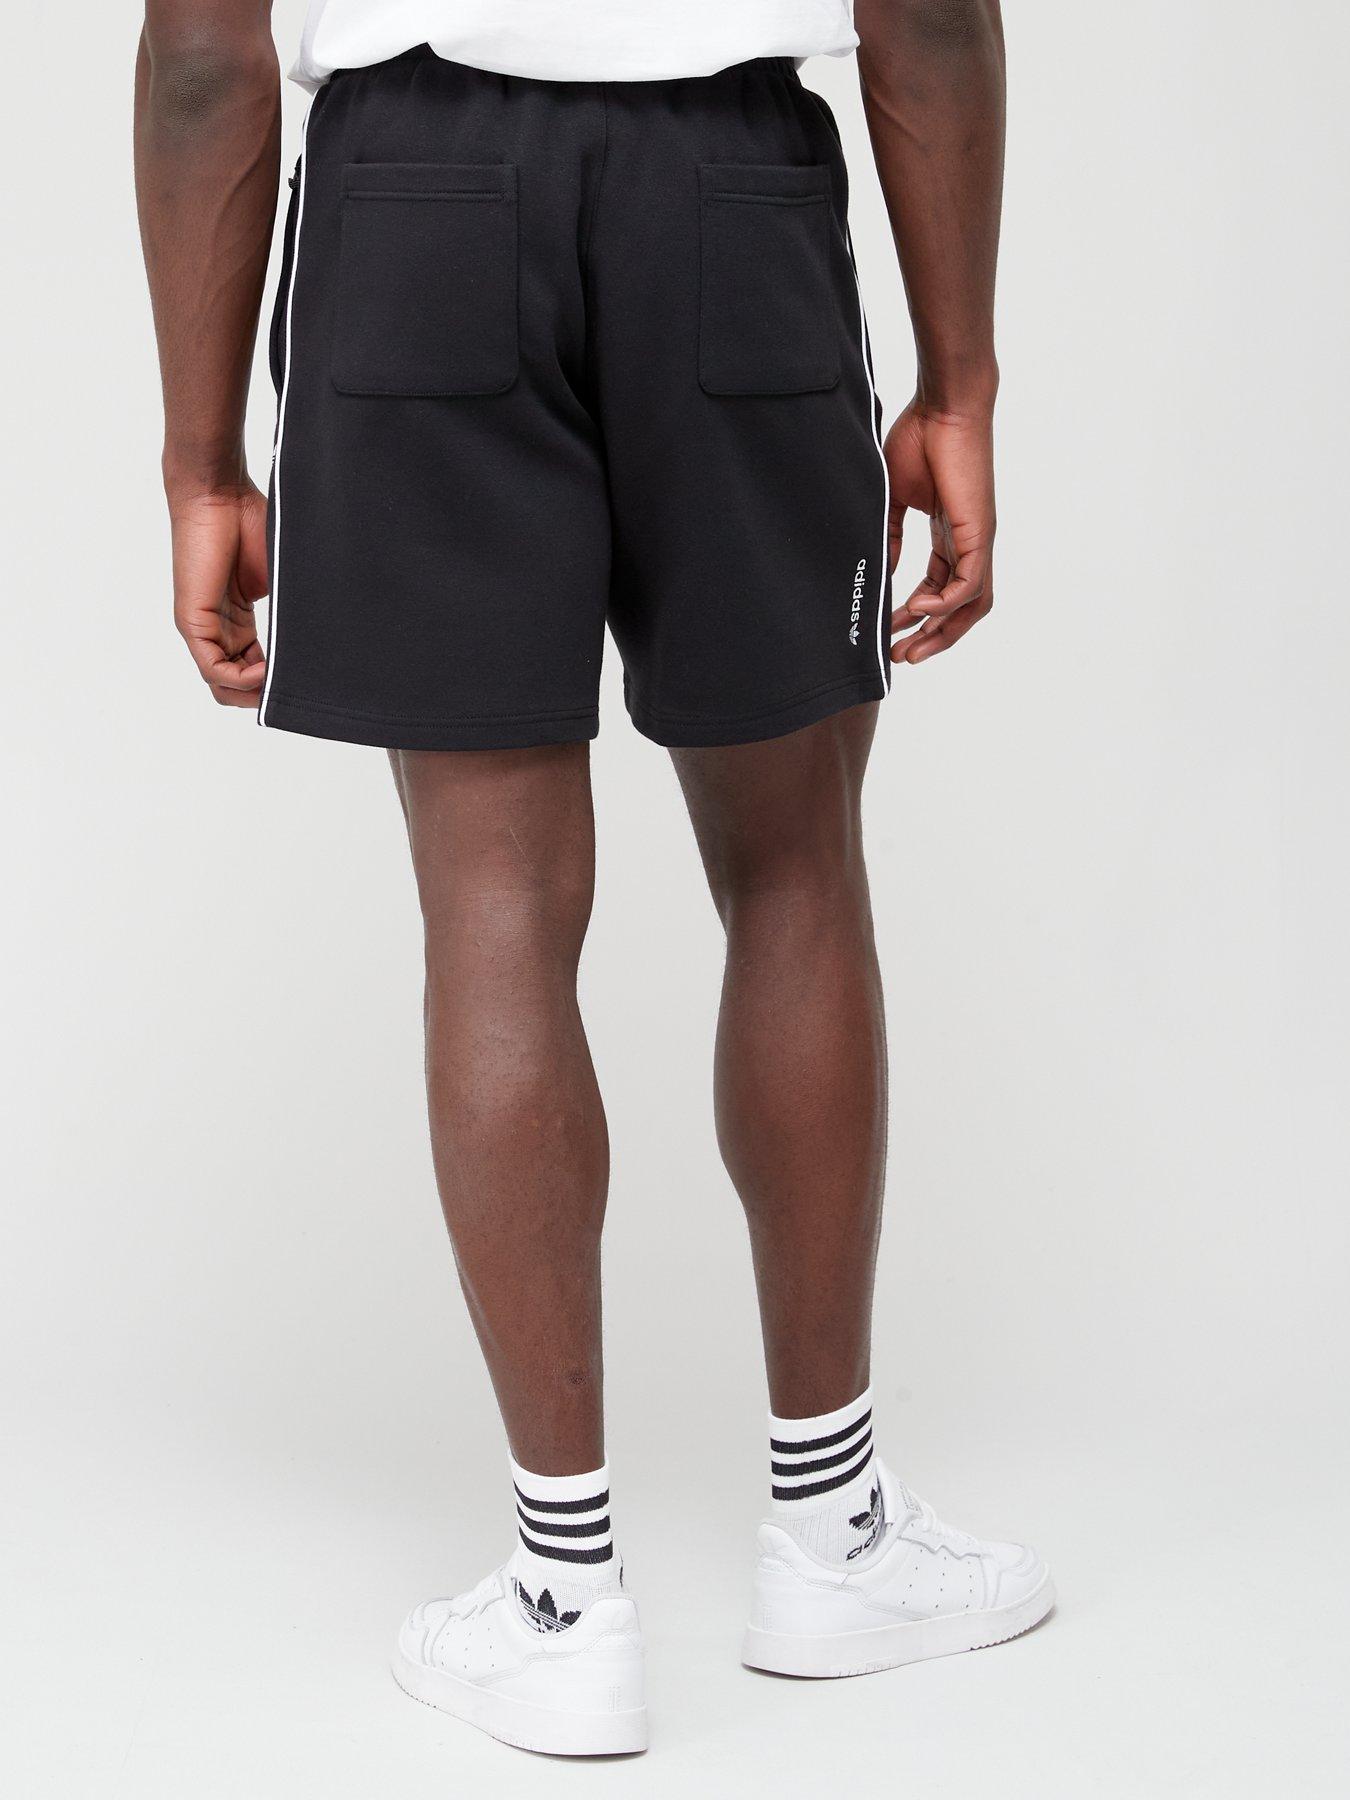 adidas Originals Adicolor Seasonal Archive - Black Shorts